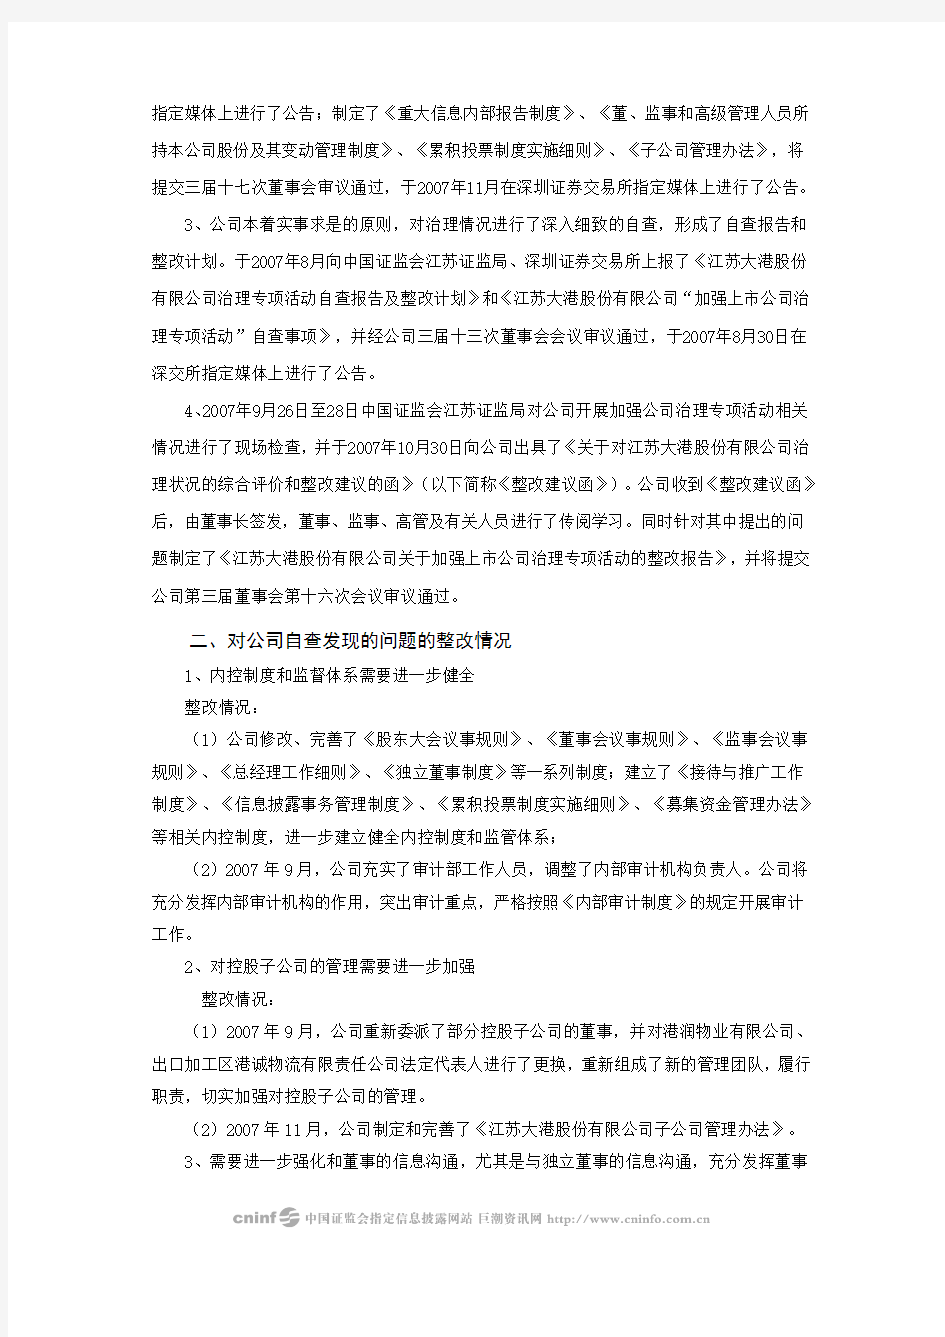 江苏大港股份有限公司关于加强上市公司治理专项活动的整改报告